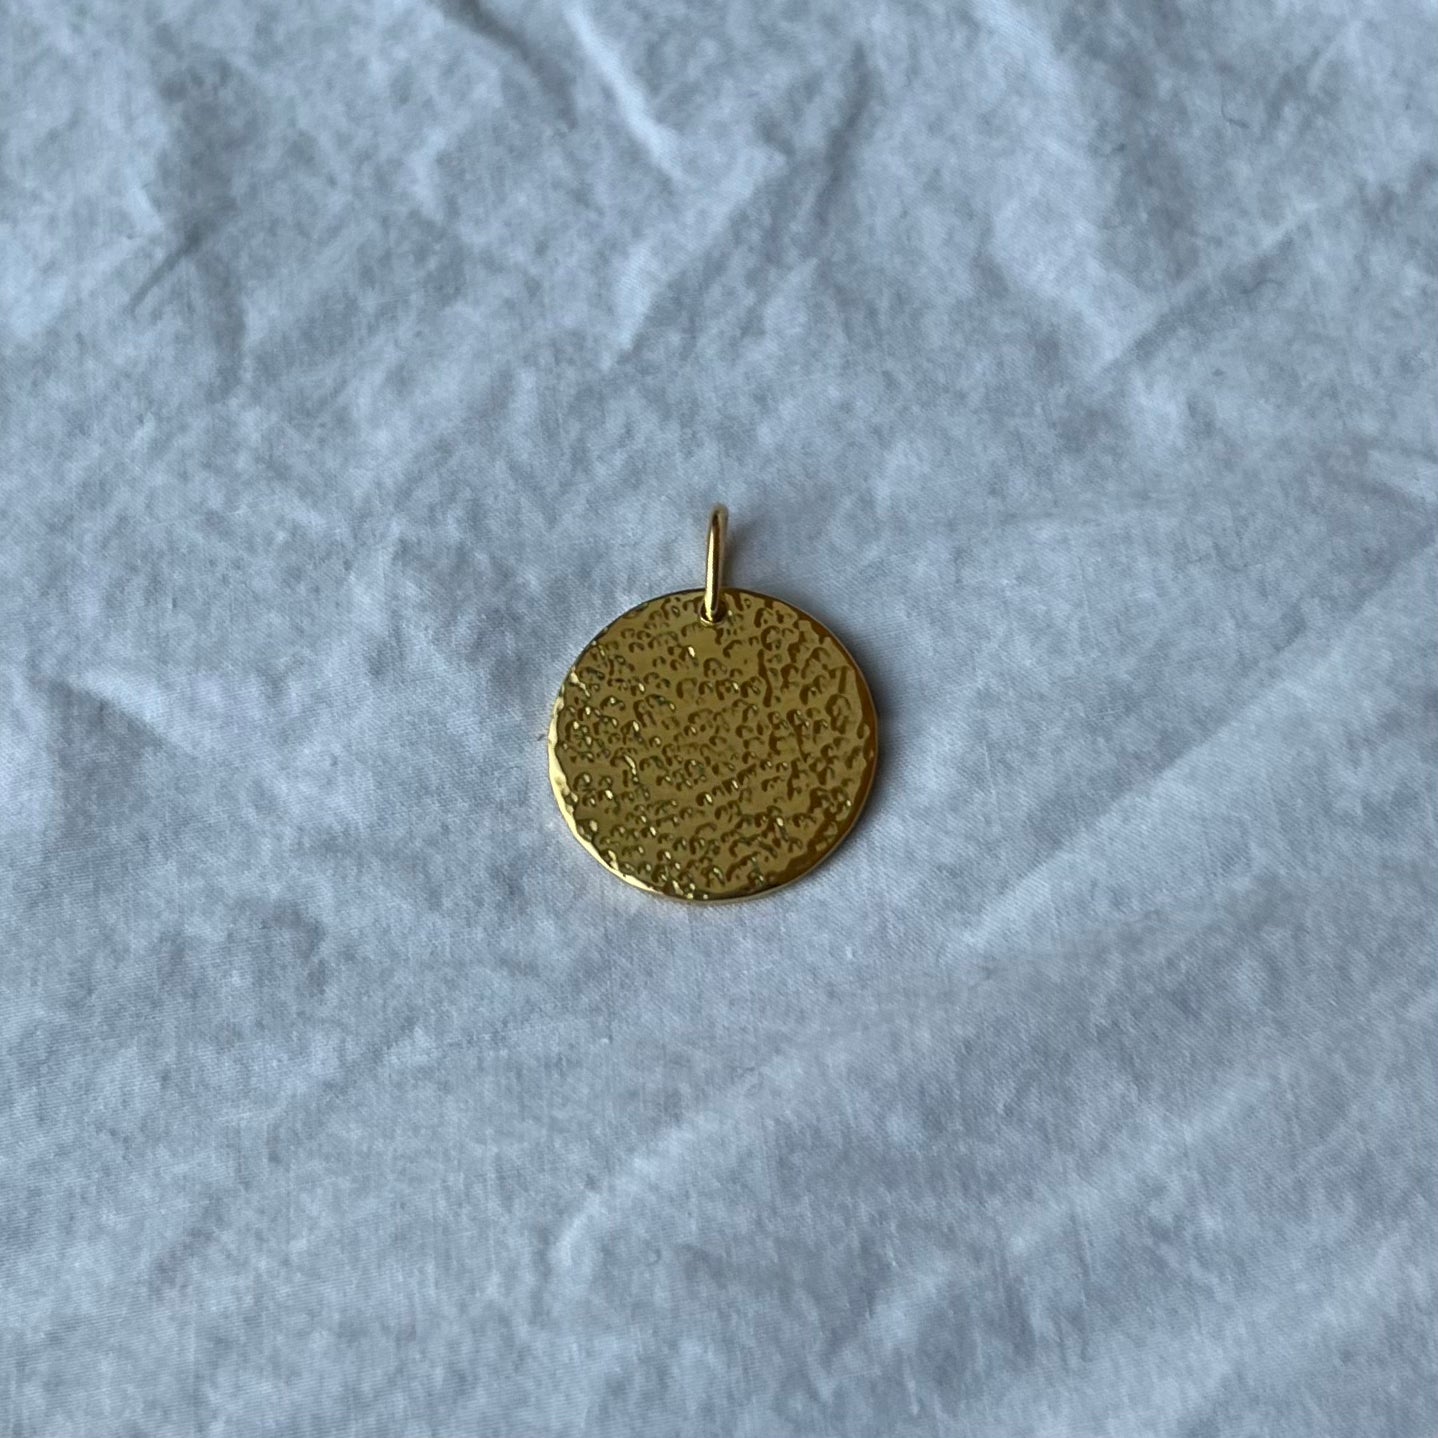 A gold vermeil charm pendant.